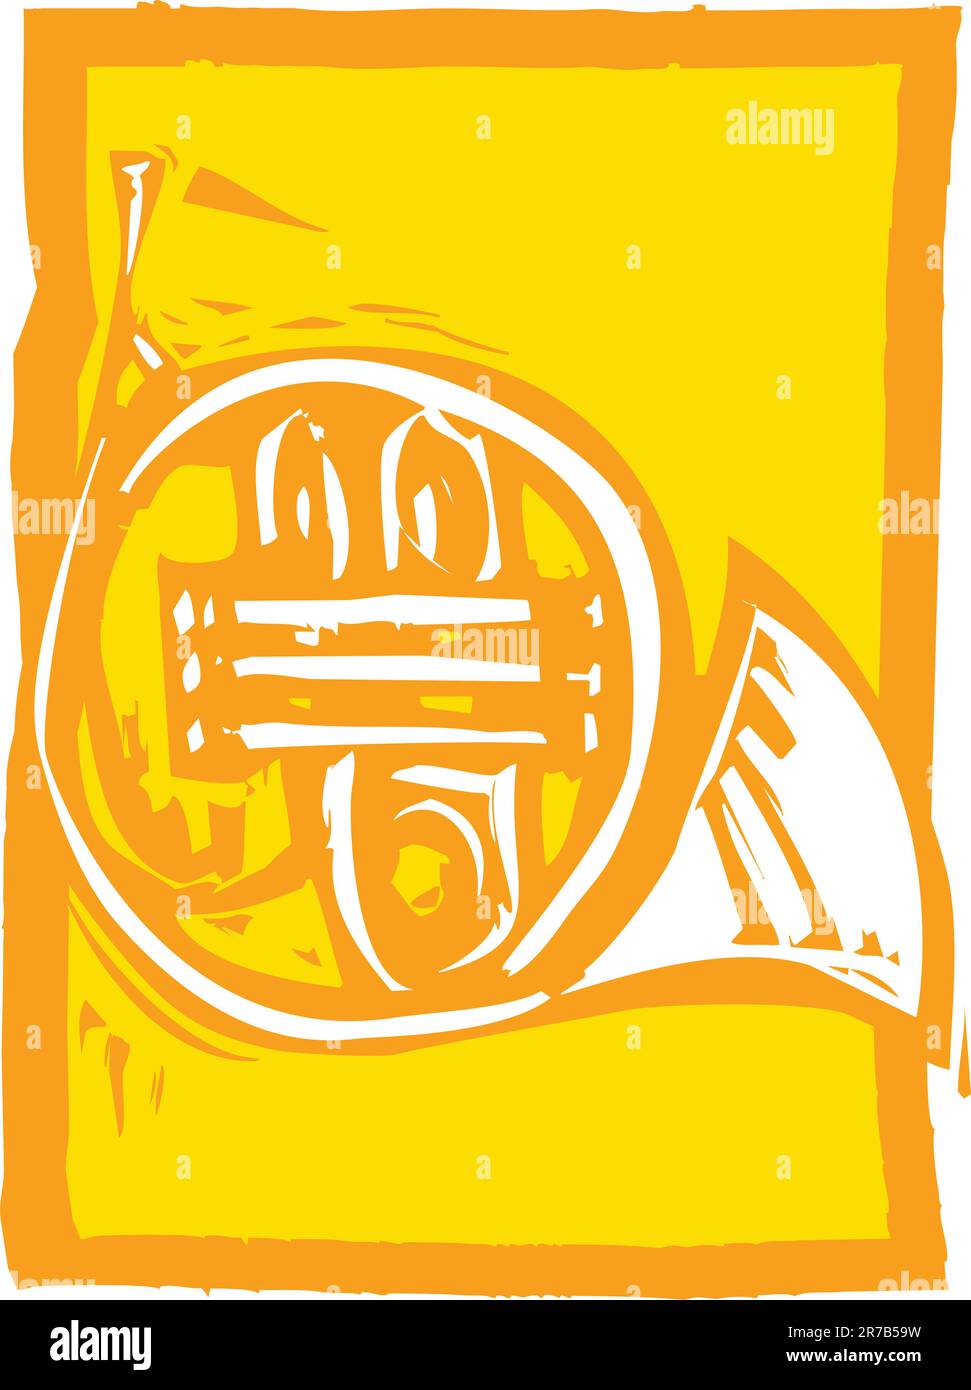 Holzschnitt-Bild von einem Französisch Horn auf einem orangefarbenen Hintergrund. Stock Vektor